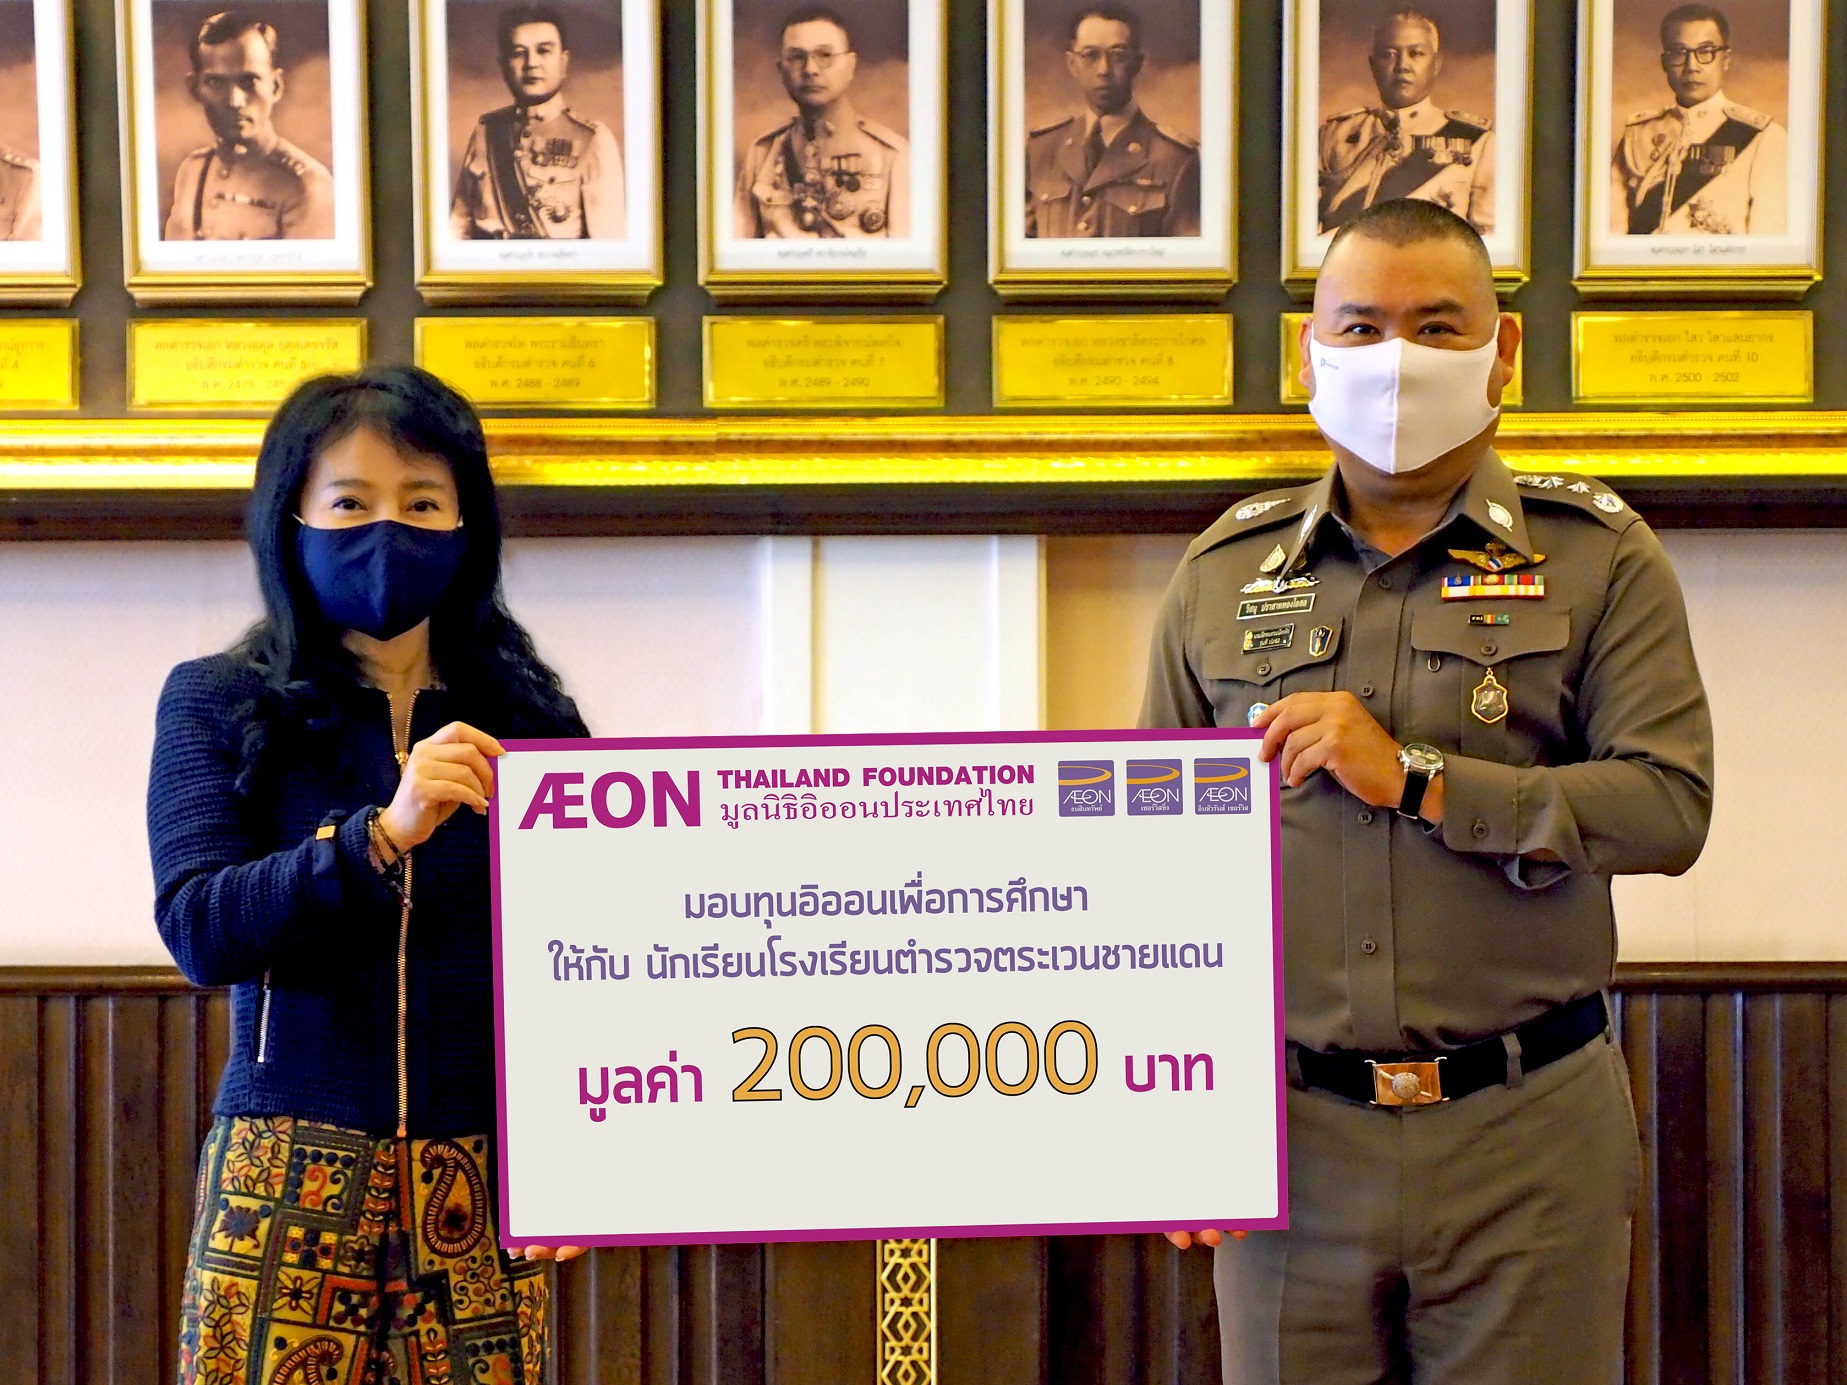 ภาพข่าว : มูลนิธิอิออนประเทศไทย มอบทุนส่งเสริมการศึกษา ให้กับ นักเรียนโรงเรียนตำรวจตระเวนชายแดน ประจำปี